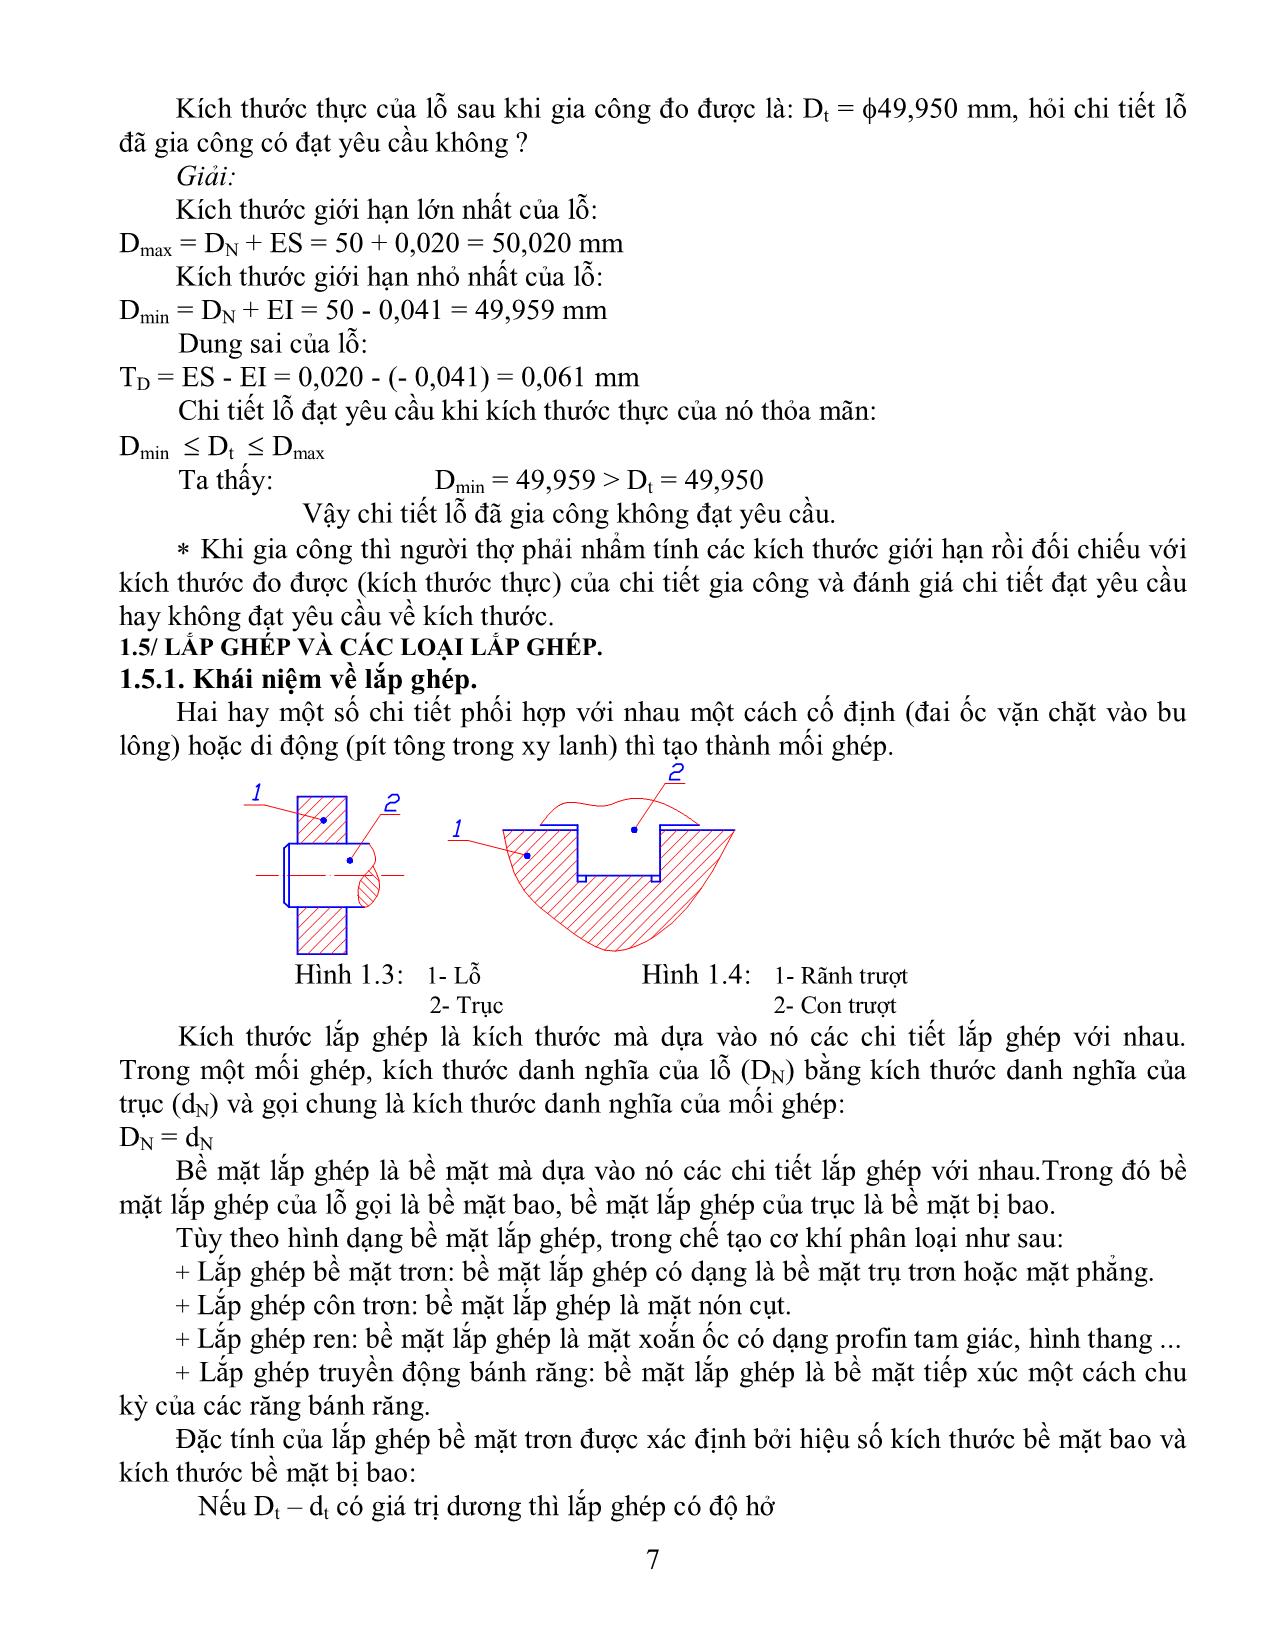 Giáo trình Dung sai lắp ghép và đo lường kỹ thuật trang 7